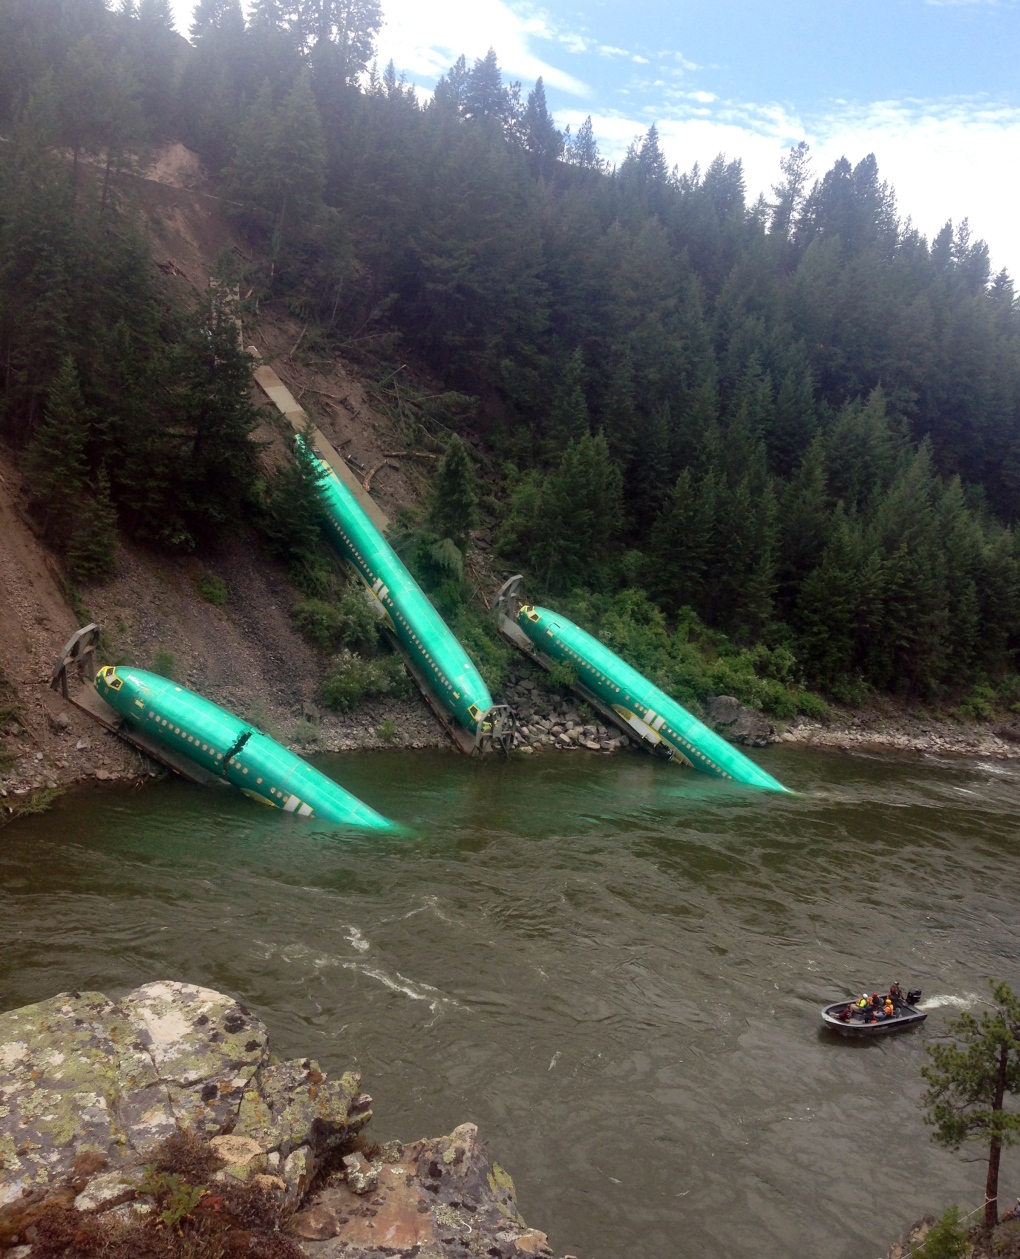 Boeing fuselages in train derailment